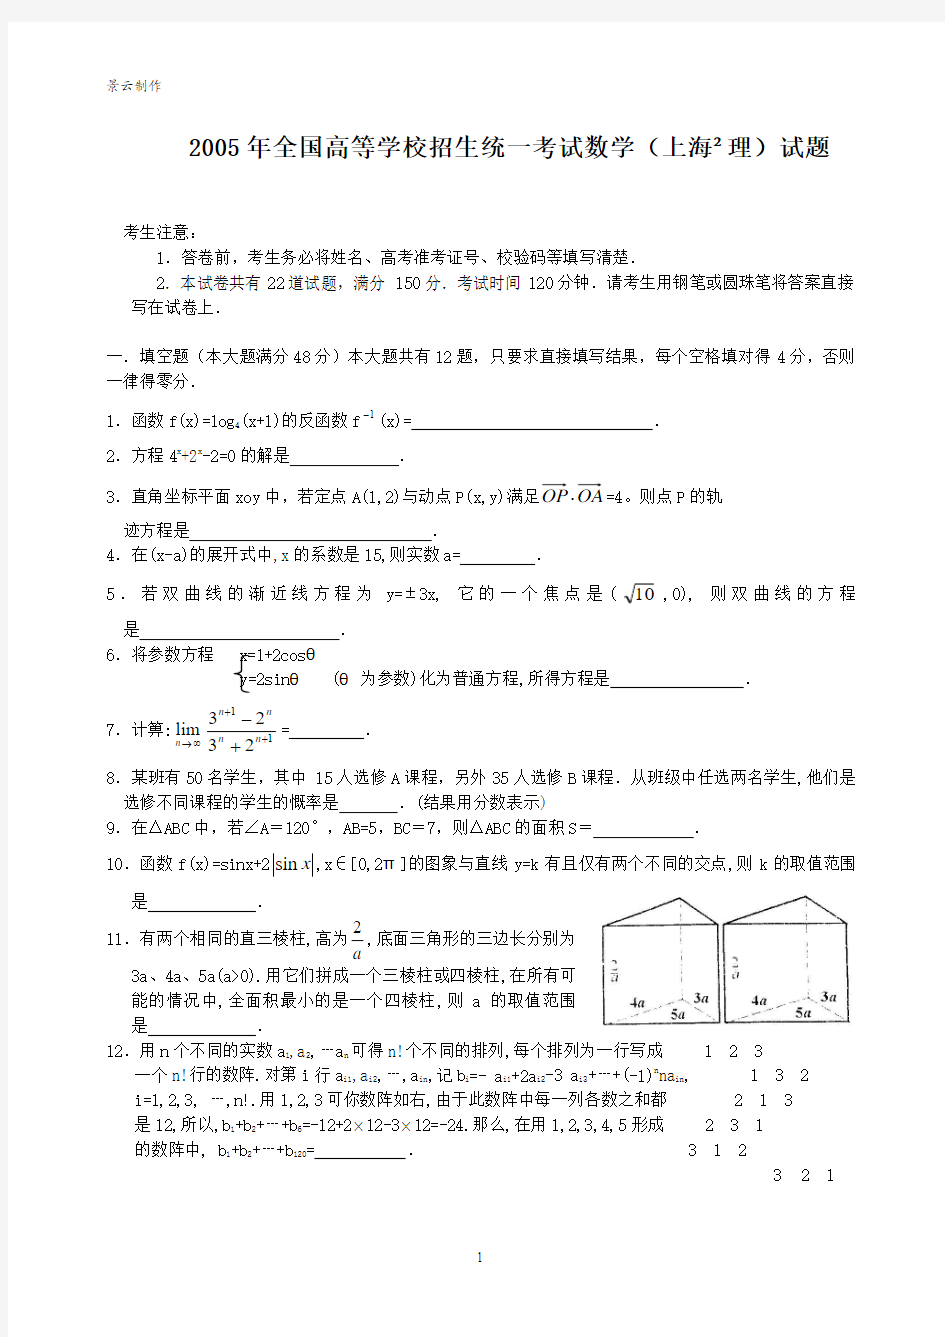 2005年高考理科数学试题及答案(上海)